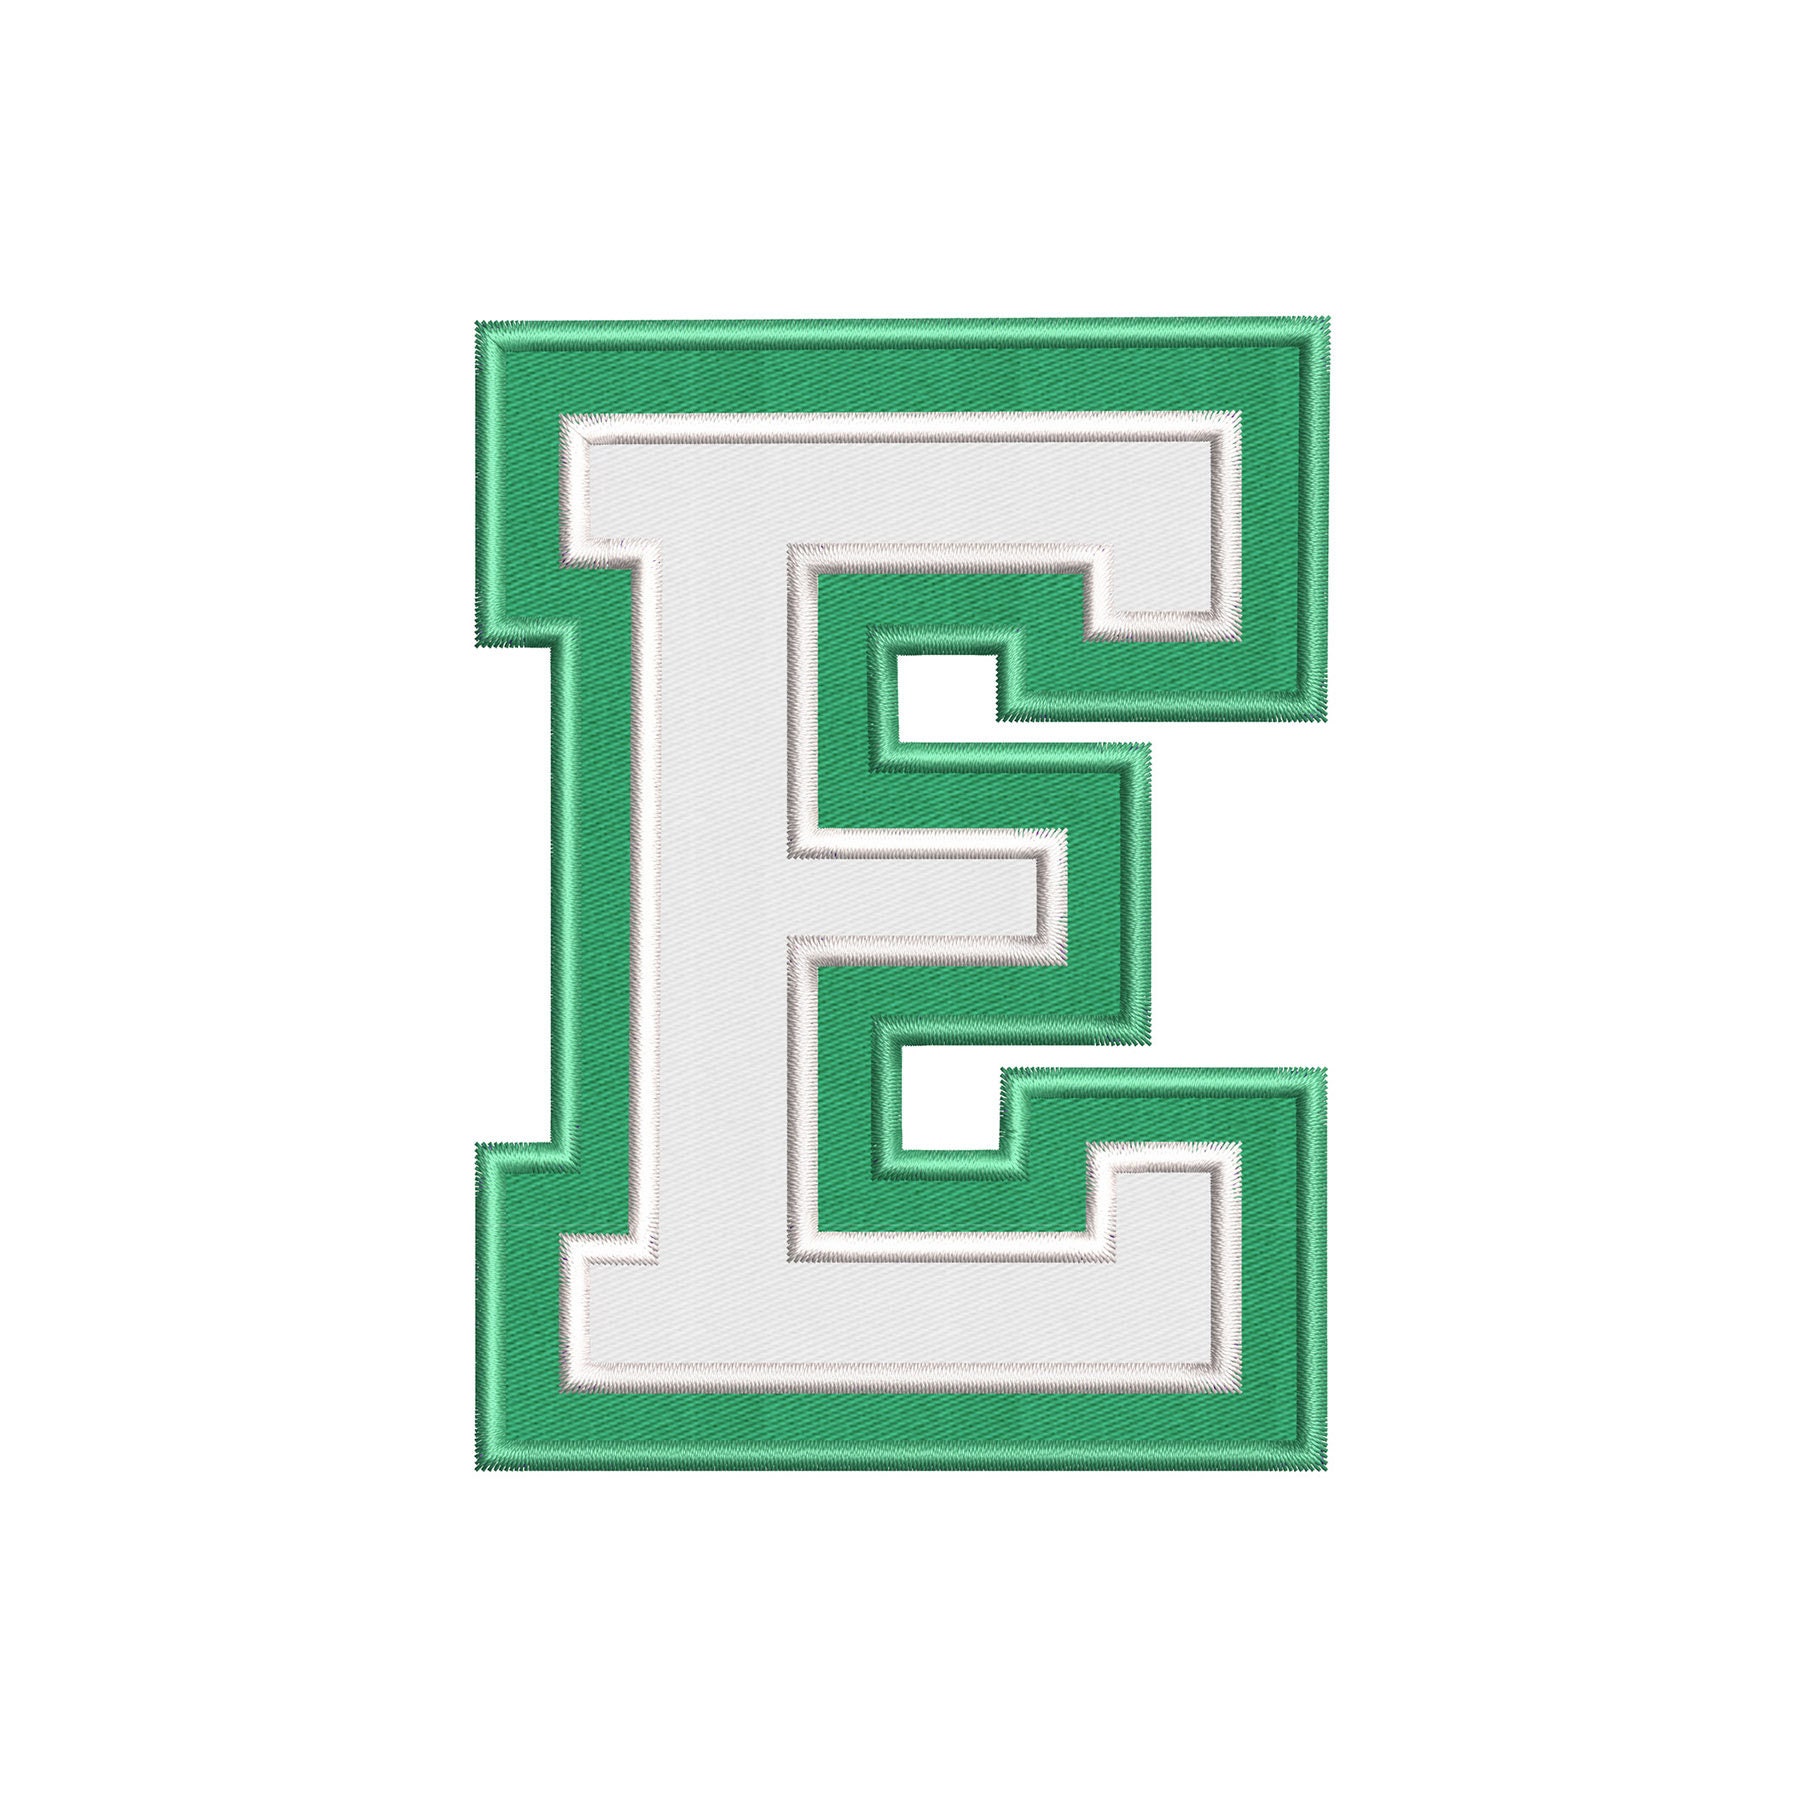 O.E.S. Block Appliqué Alphabet 4.5 Embroidery Design | Etsy